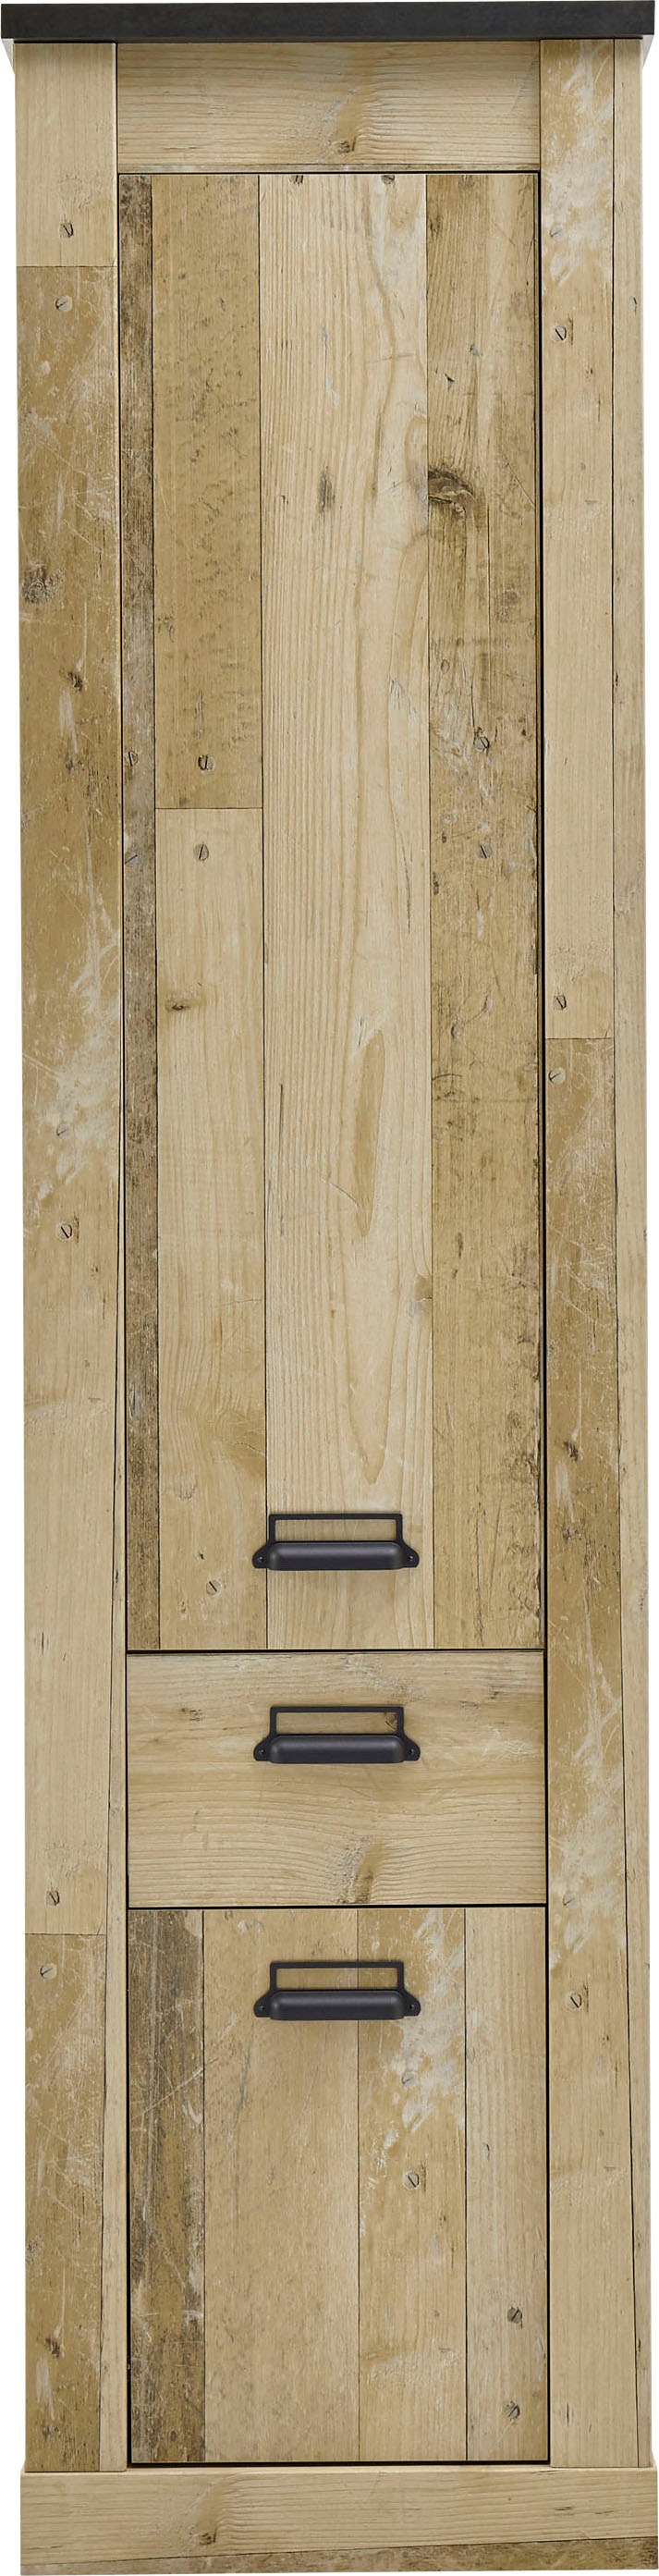 Home affaire Stauraumschrank »SHERWOOD«, in modernem Holz Dekor, mit Apothekergriffen aus Metall, Höhe 201 cm